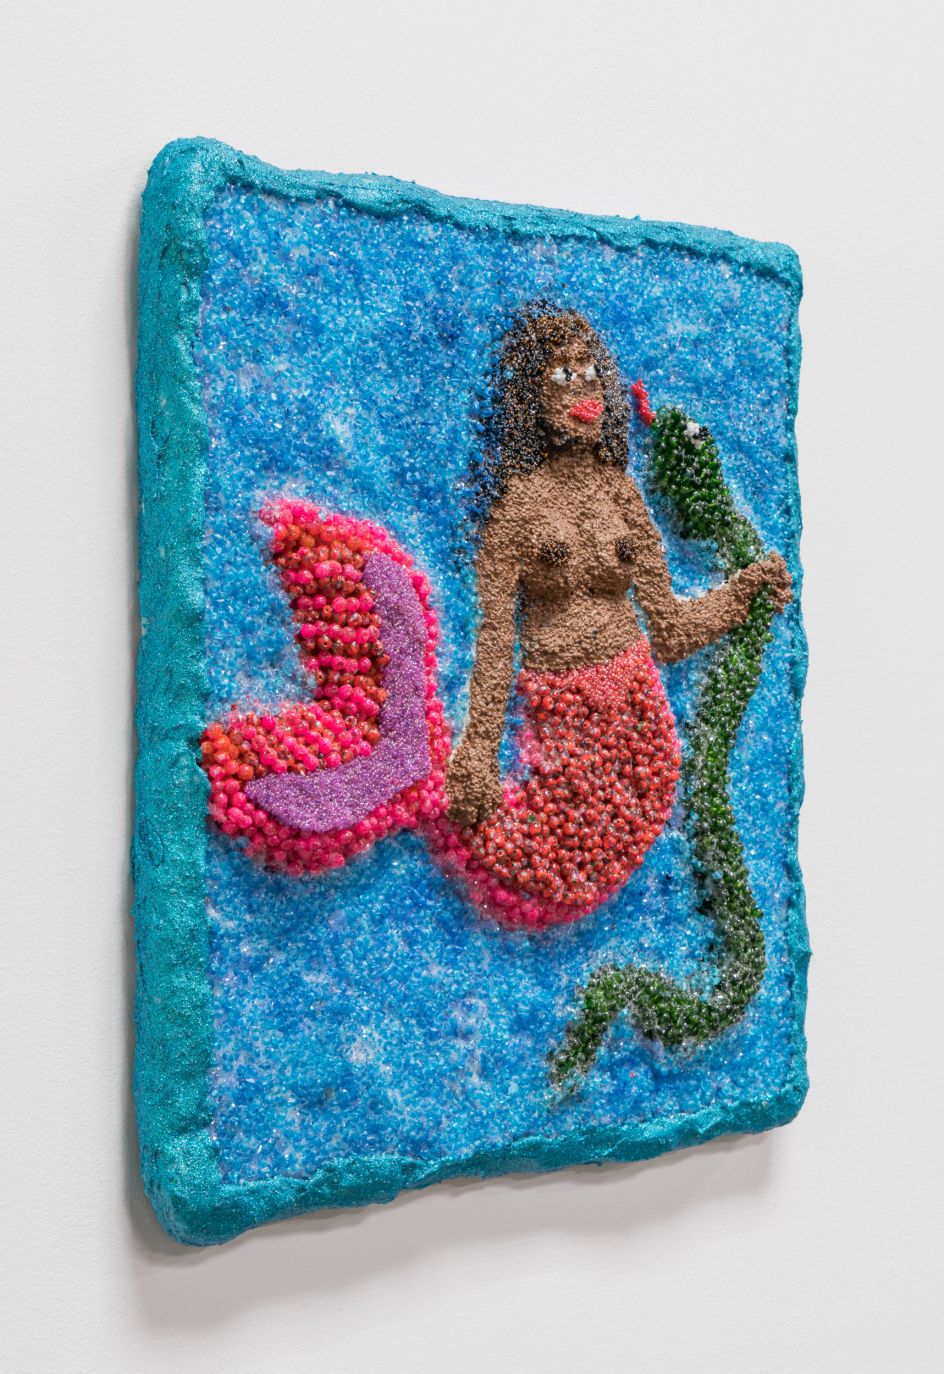 La Sirena, 2021. Courtesy of the artist and Monique Meloche Gallery